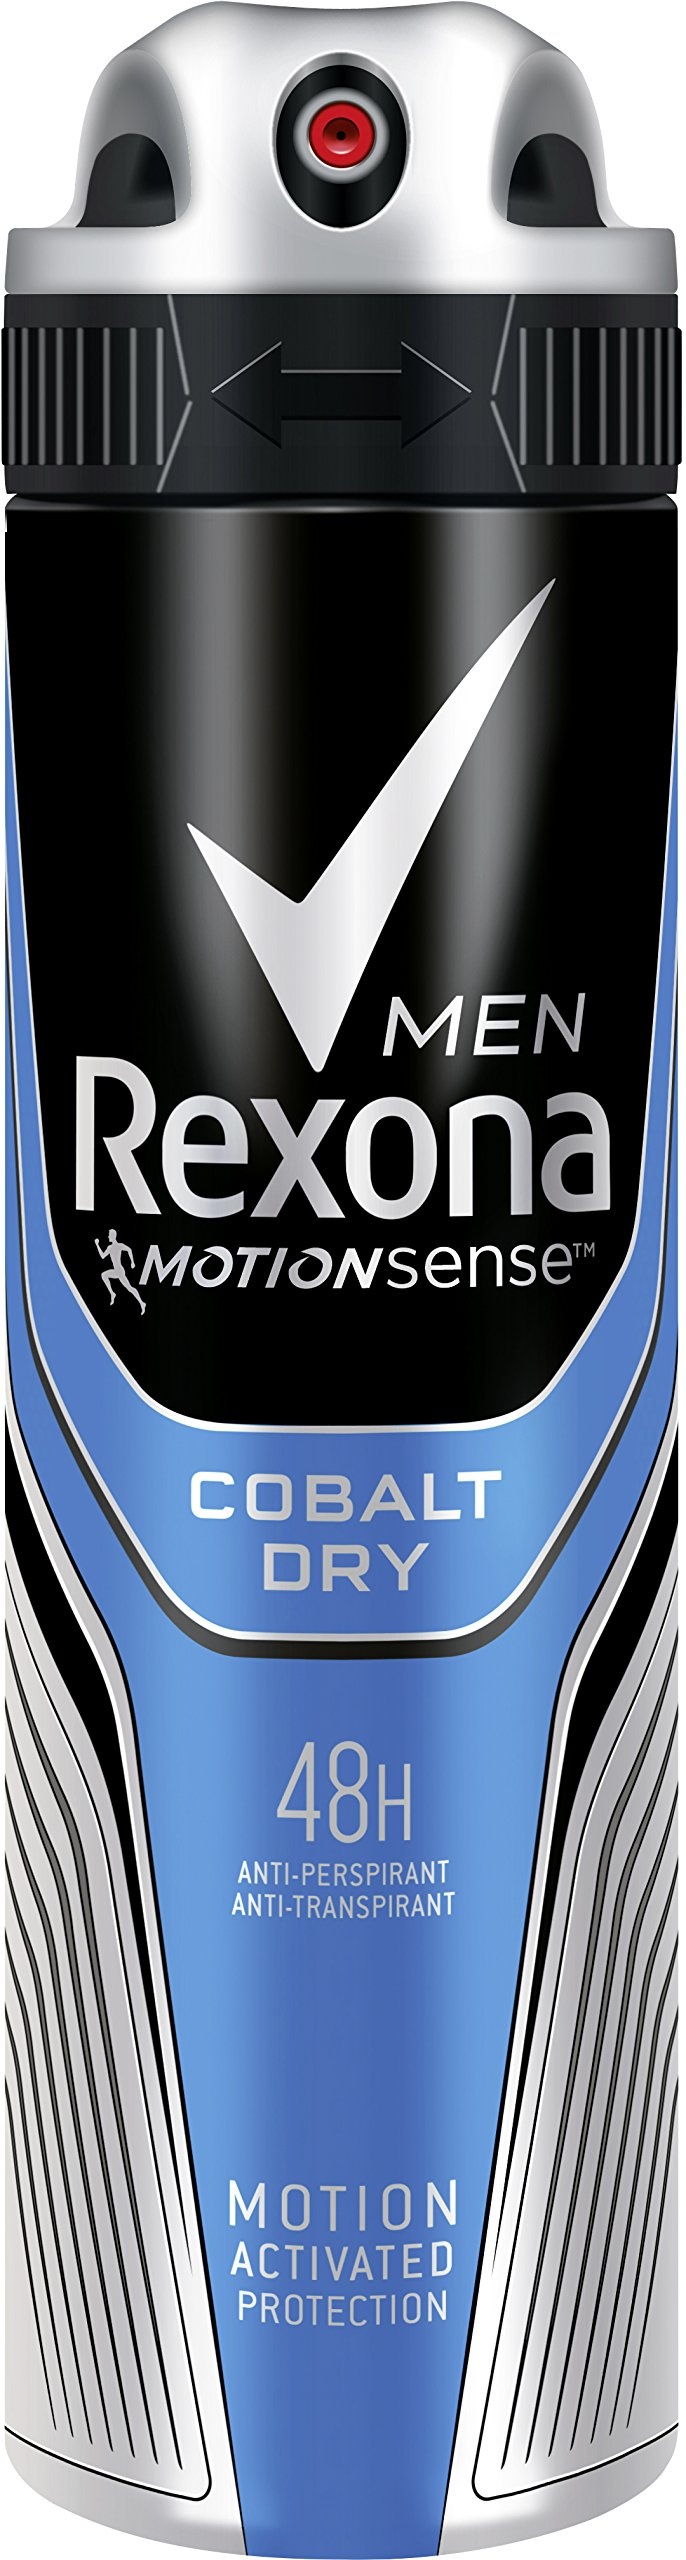 rexona cobalt